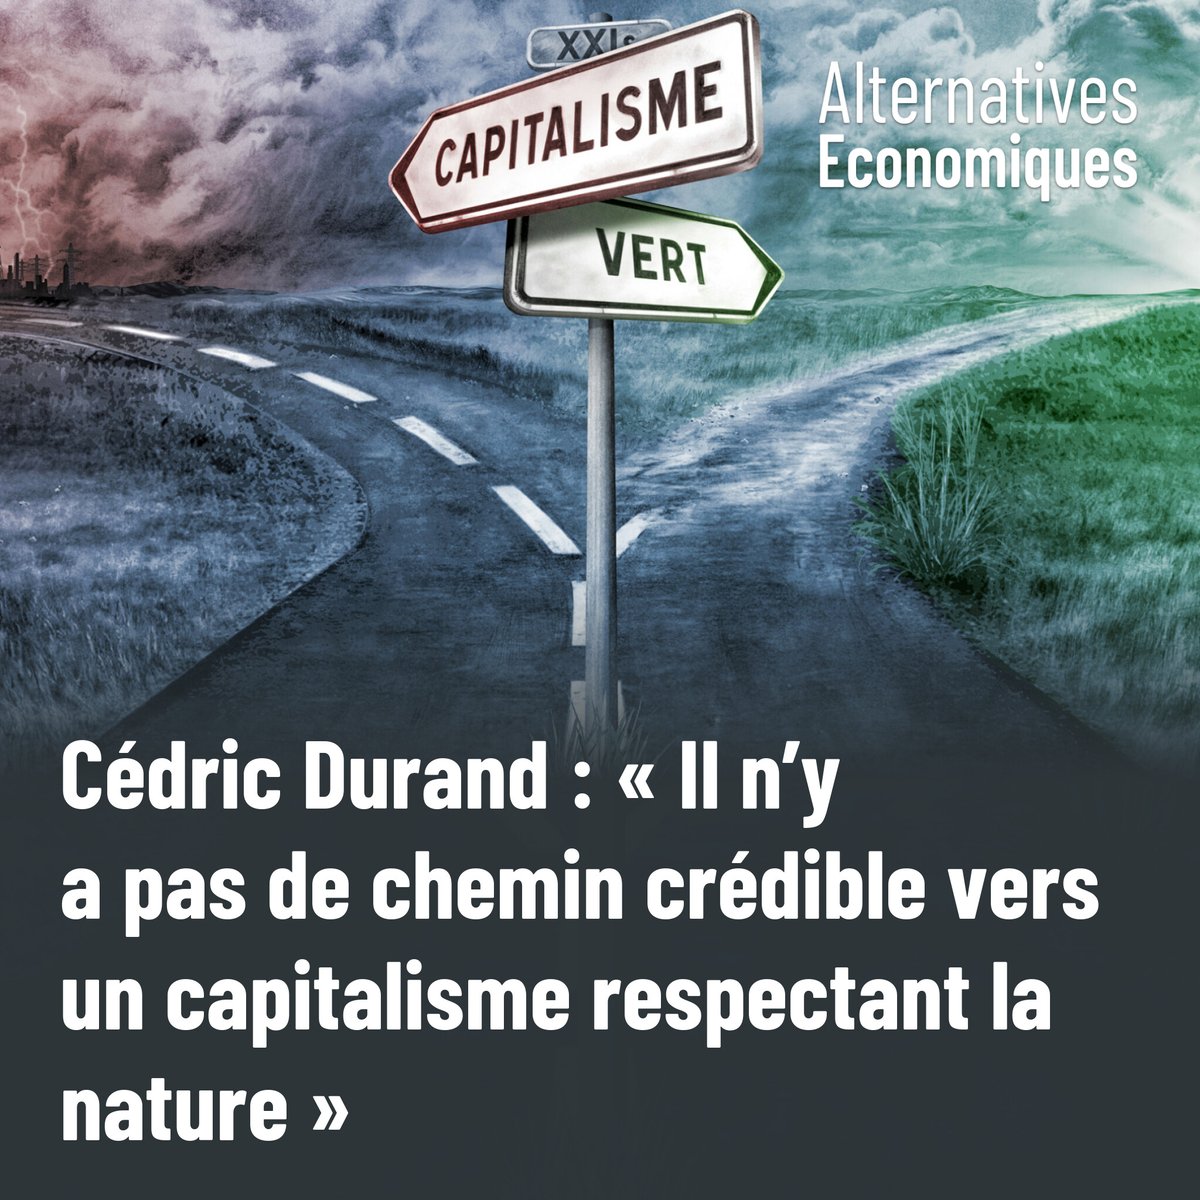 Pour l’économiste Cédric Durand, la bifurcation écologique sera anticapitaliste ou ne sera pas. Dans son dernier livre, il trace une voie qui s’écarte radicalement de l’idée d’une simple transition. ➡️ altereco.media/cSc